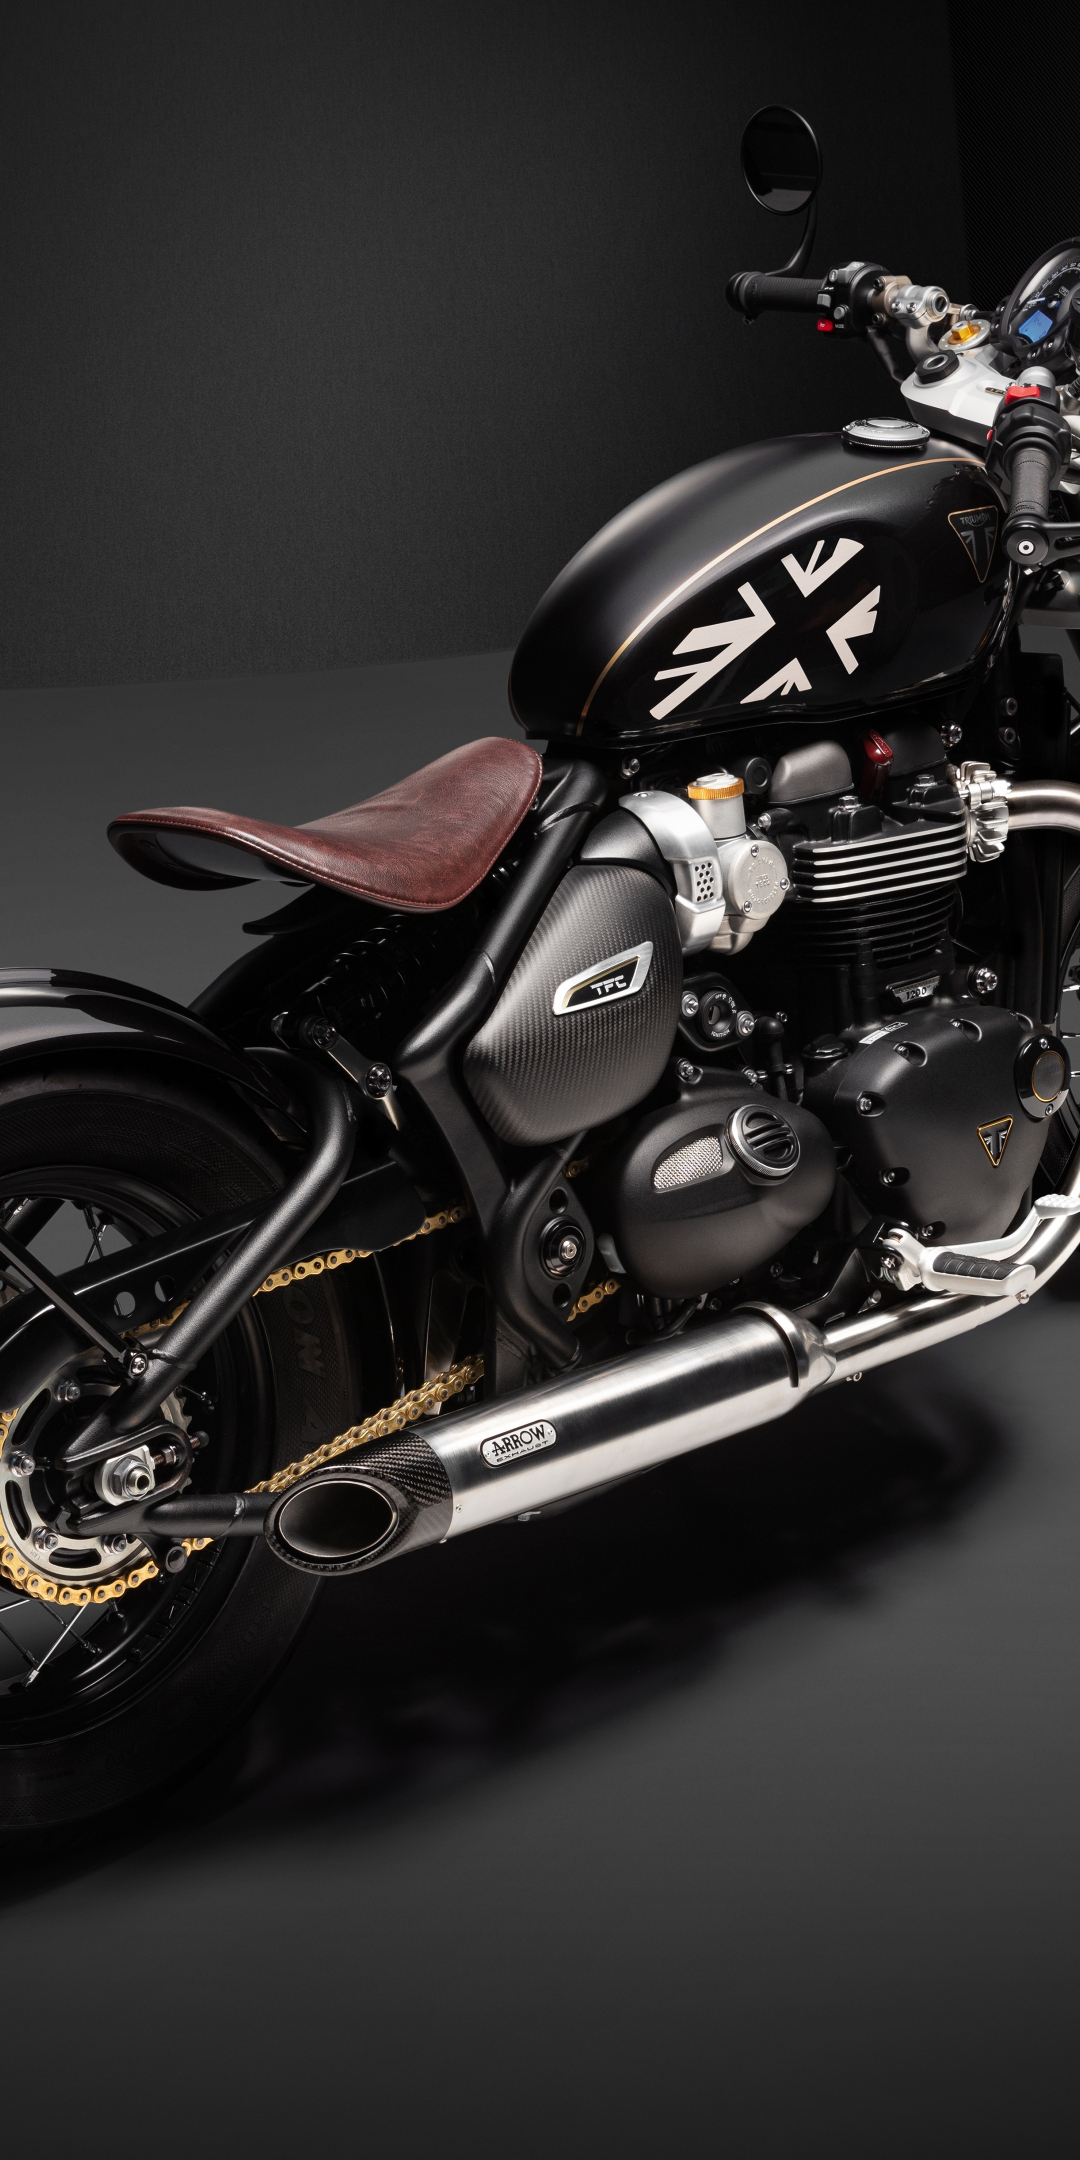 Triumph Bonneville Bobber TFC, 2020 motorcycle, 1080x2160 wallpaper